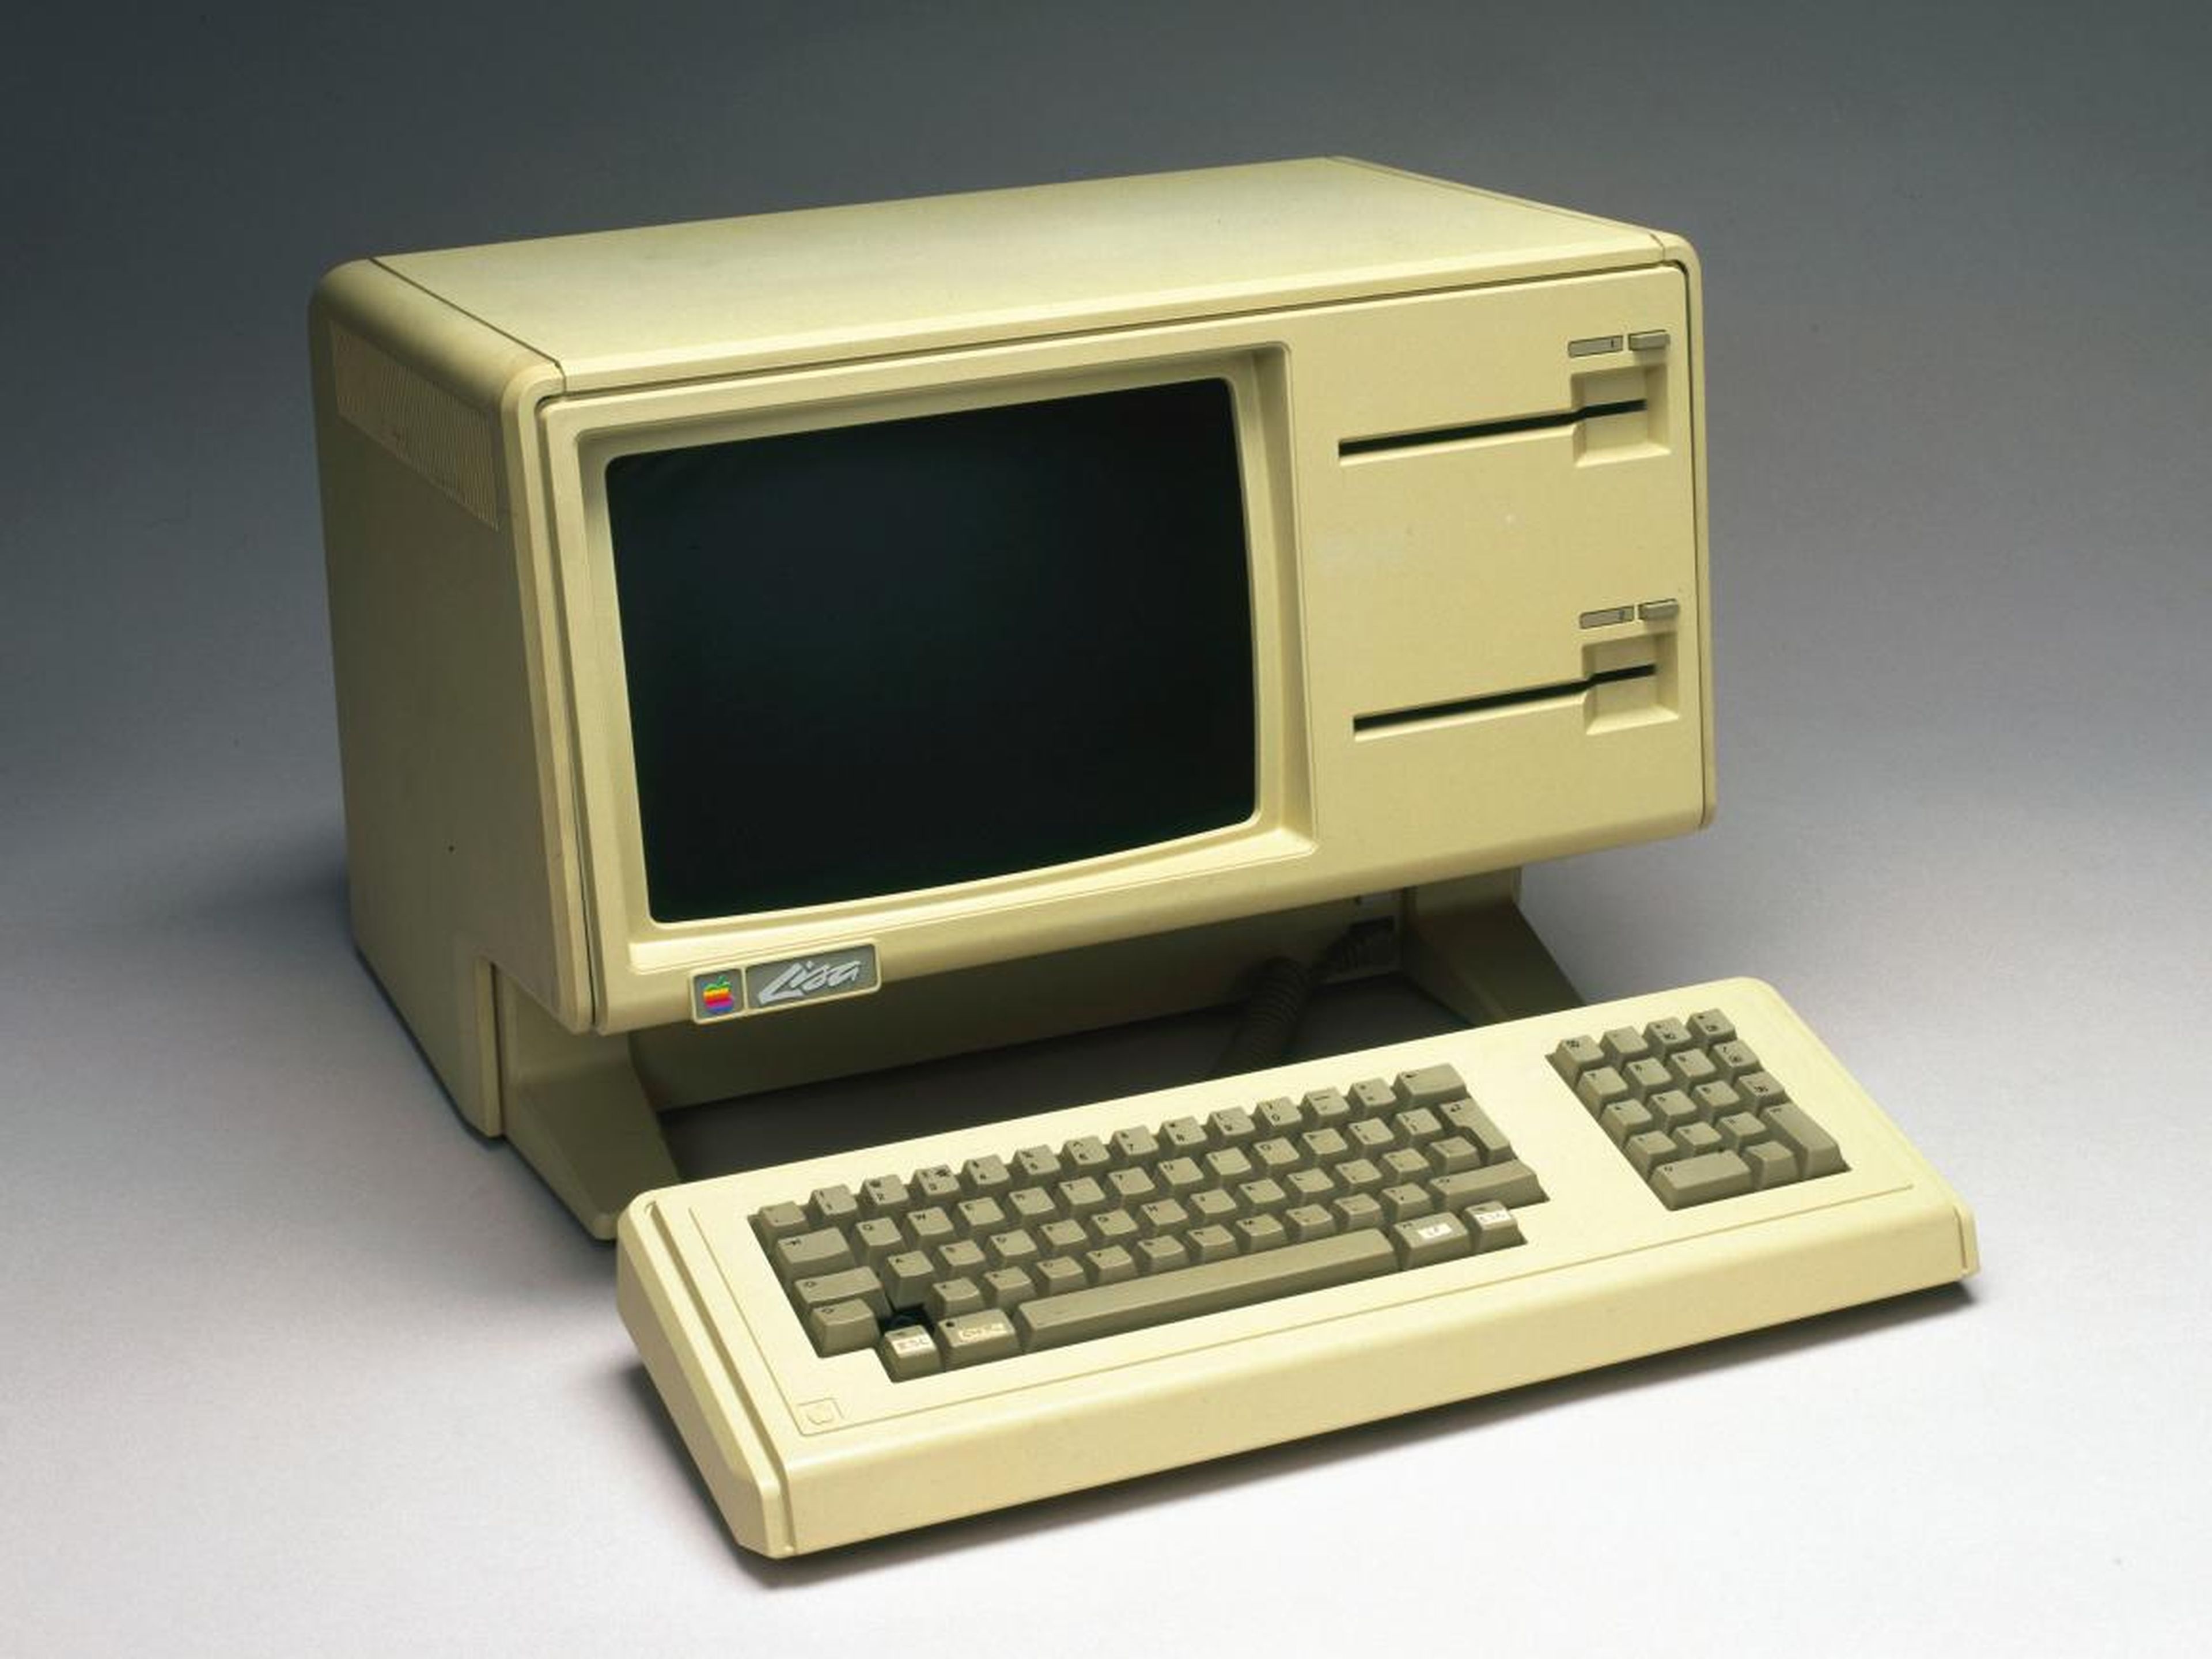 5. Apple Lisa (1983) — $9,995